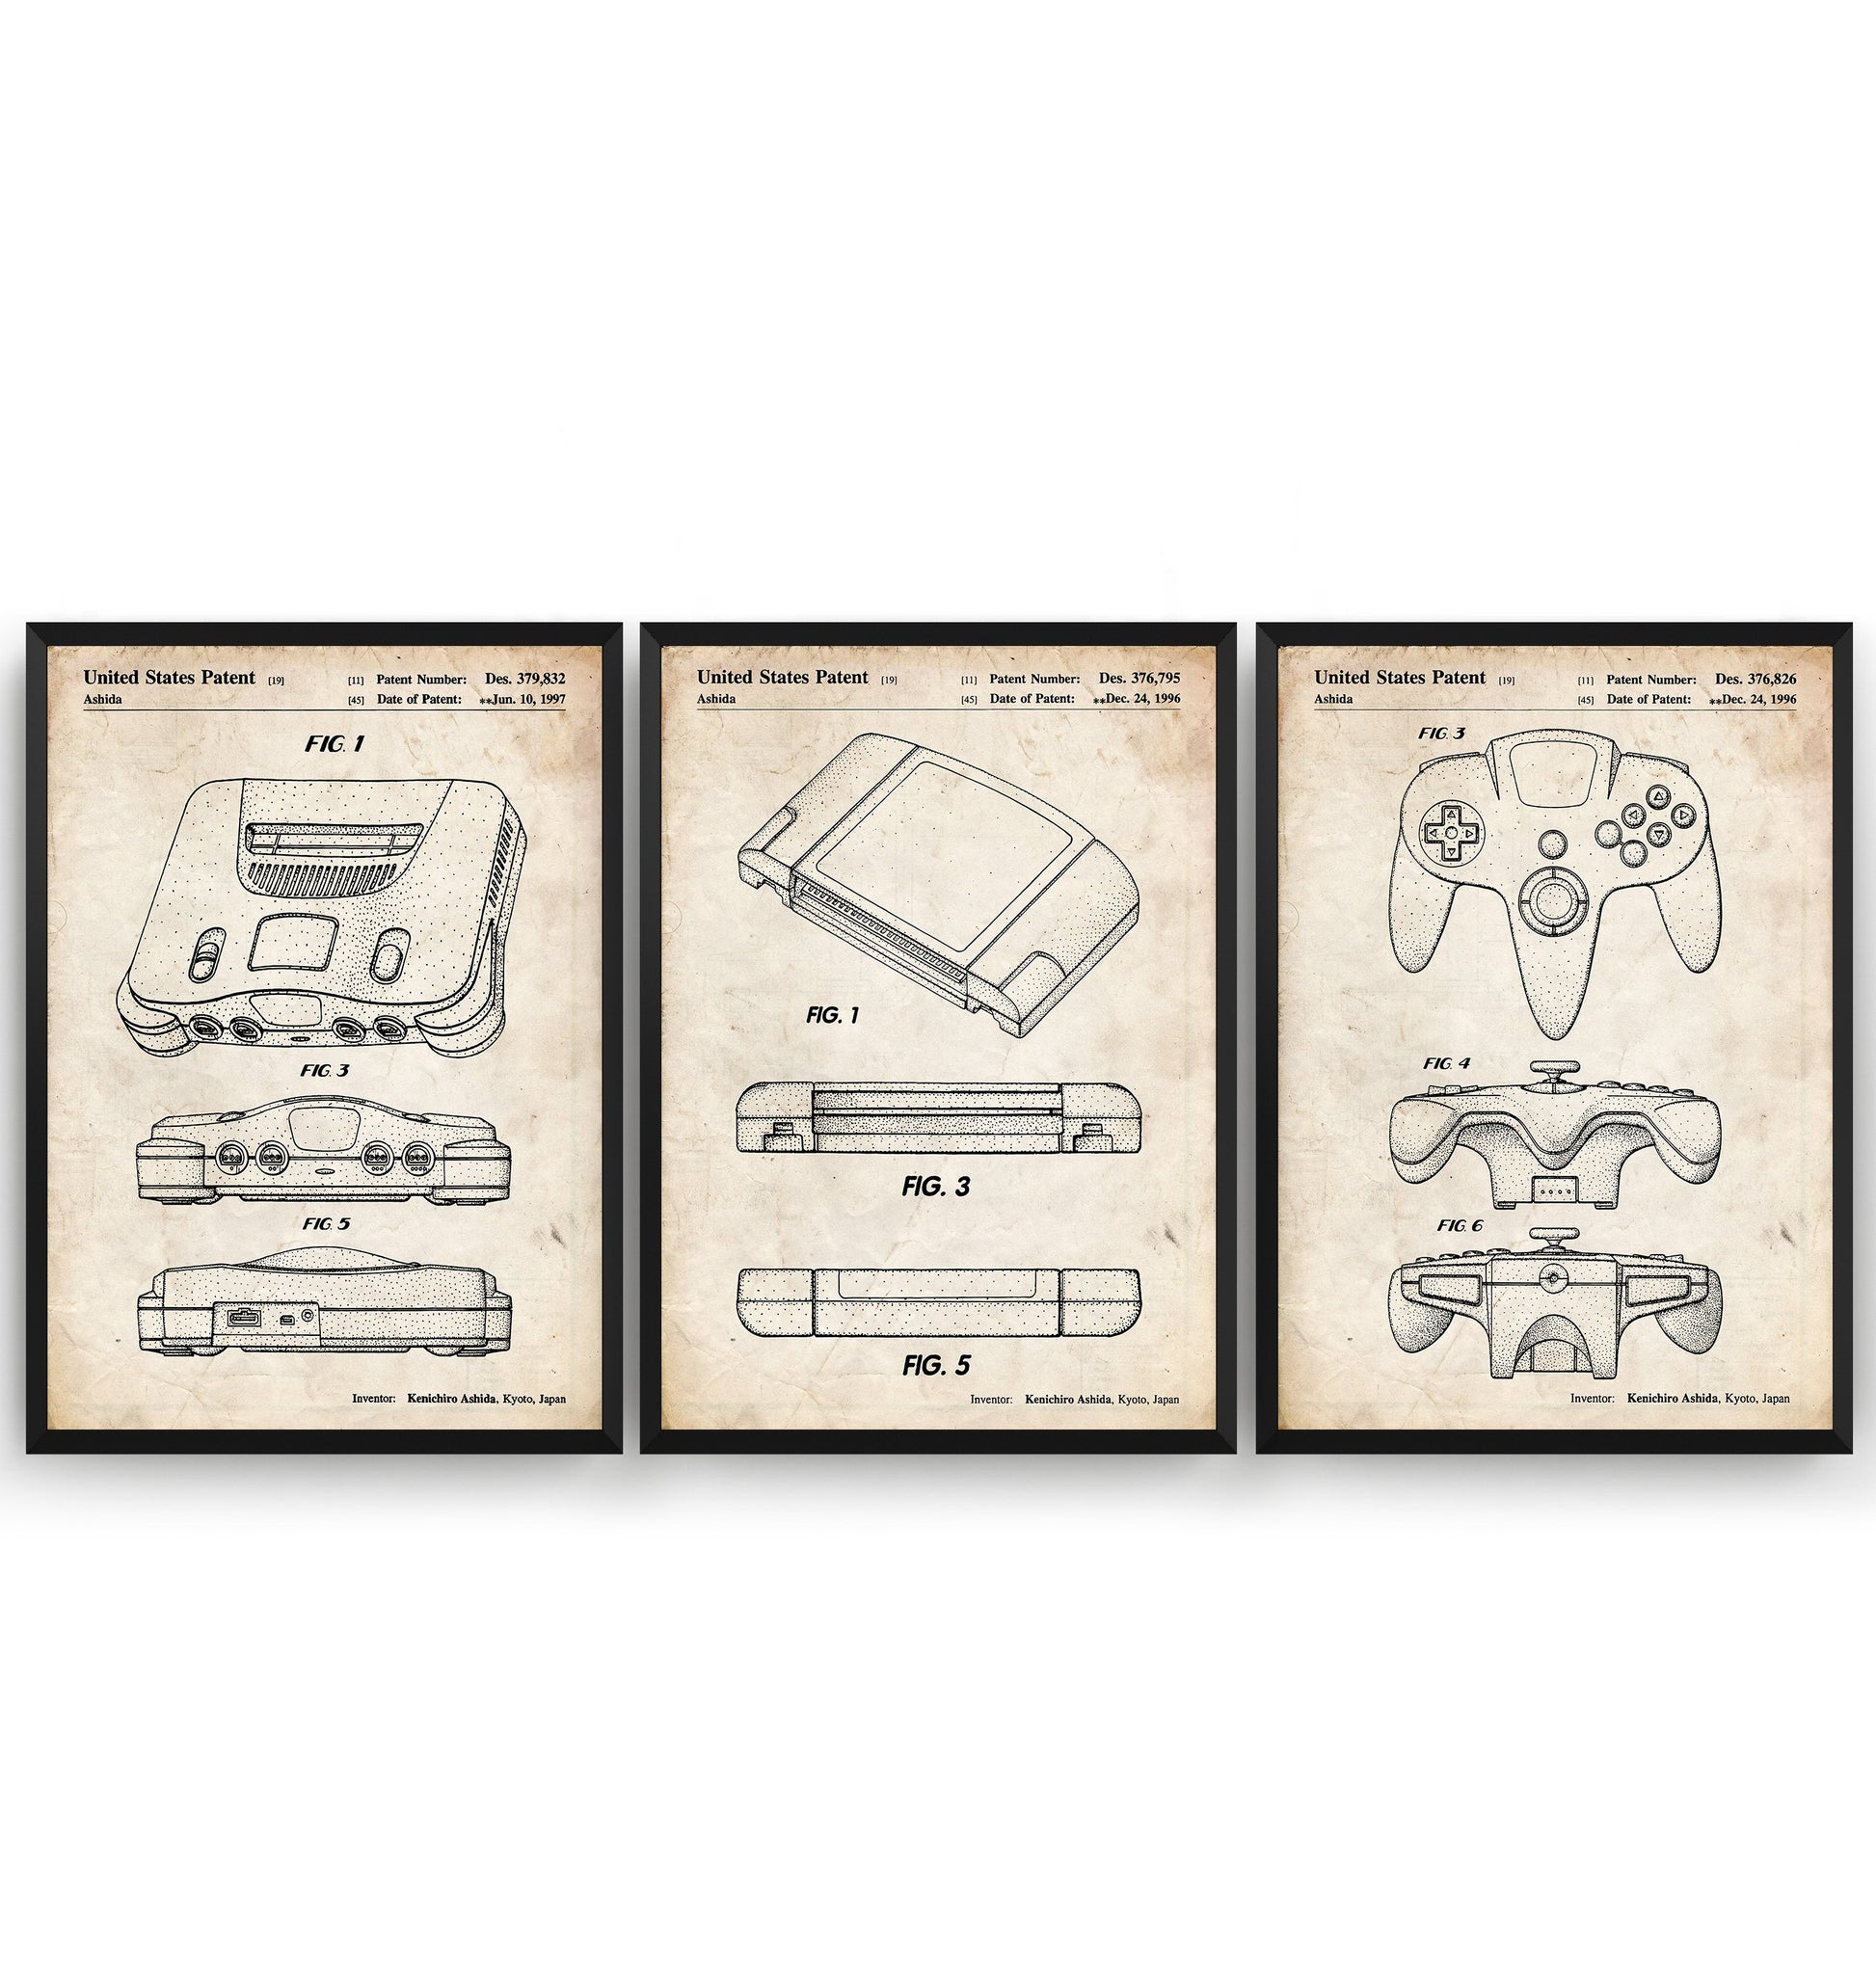 N64 Set Of 3 Patent Prints - Magic Posters